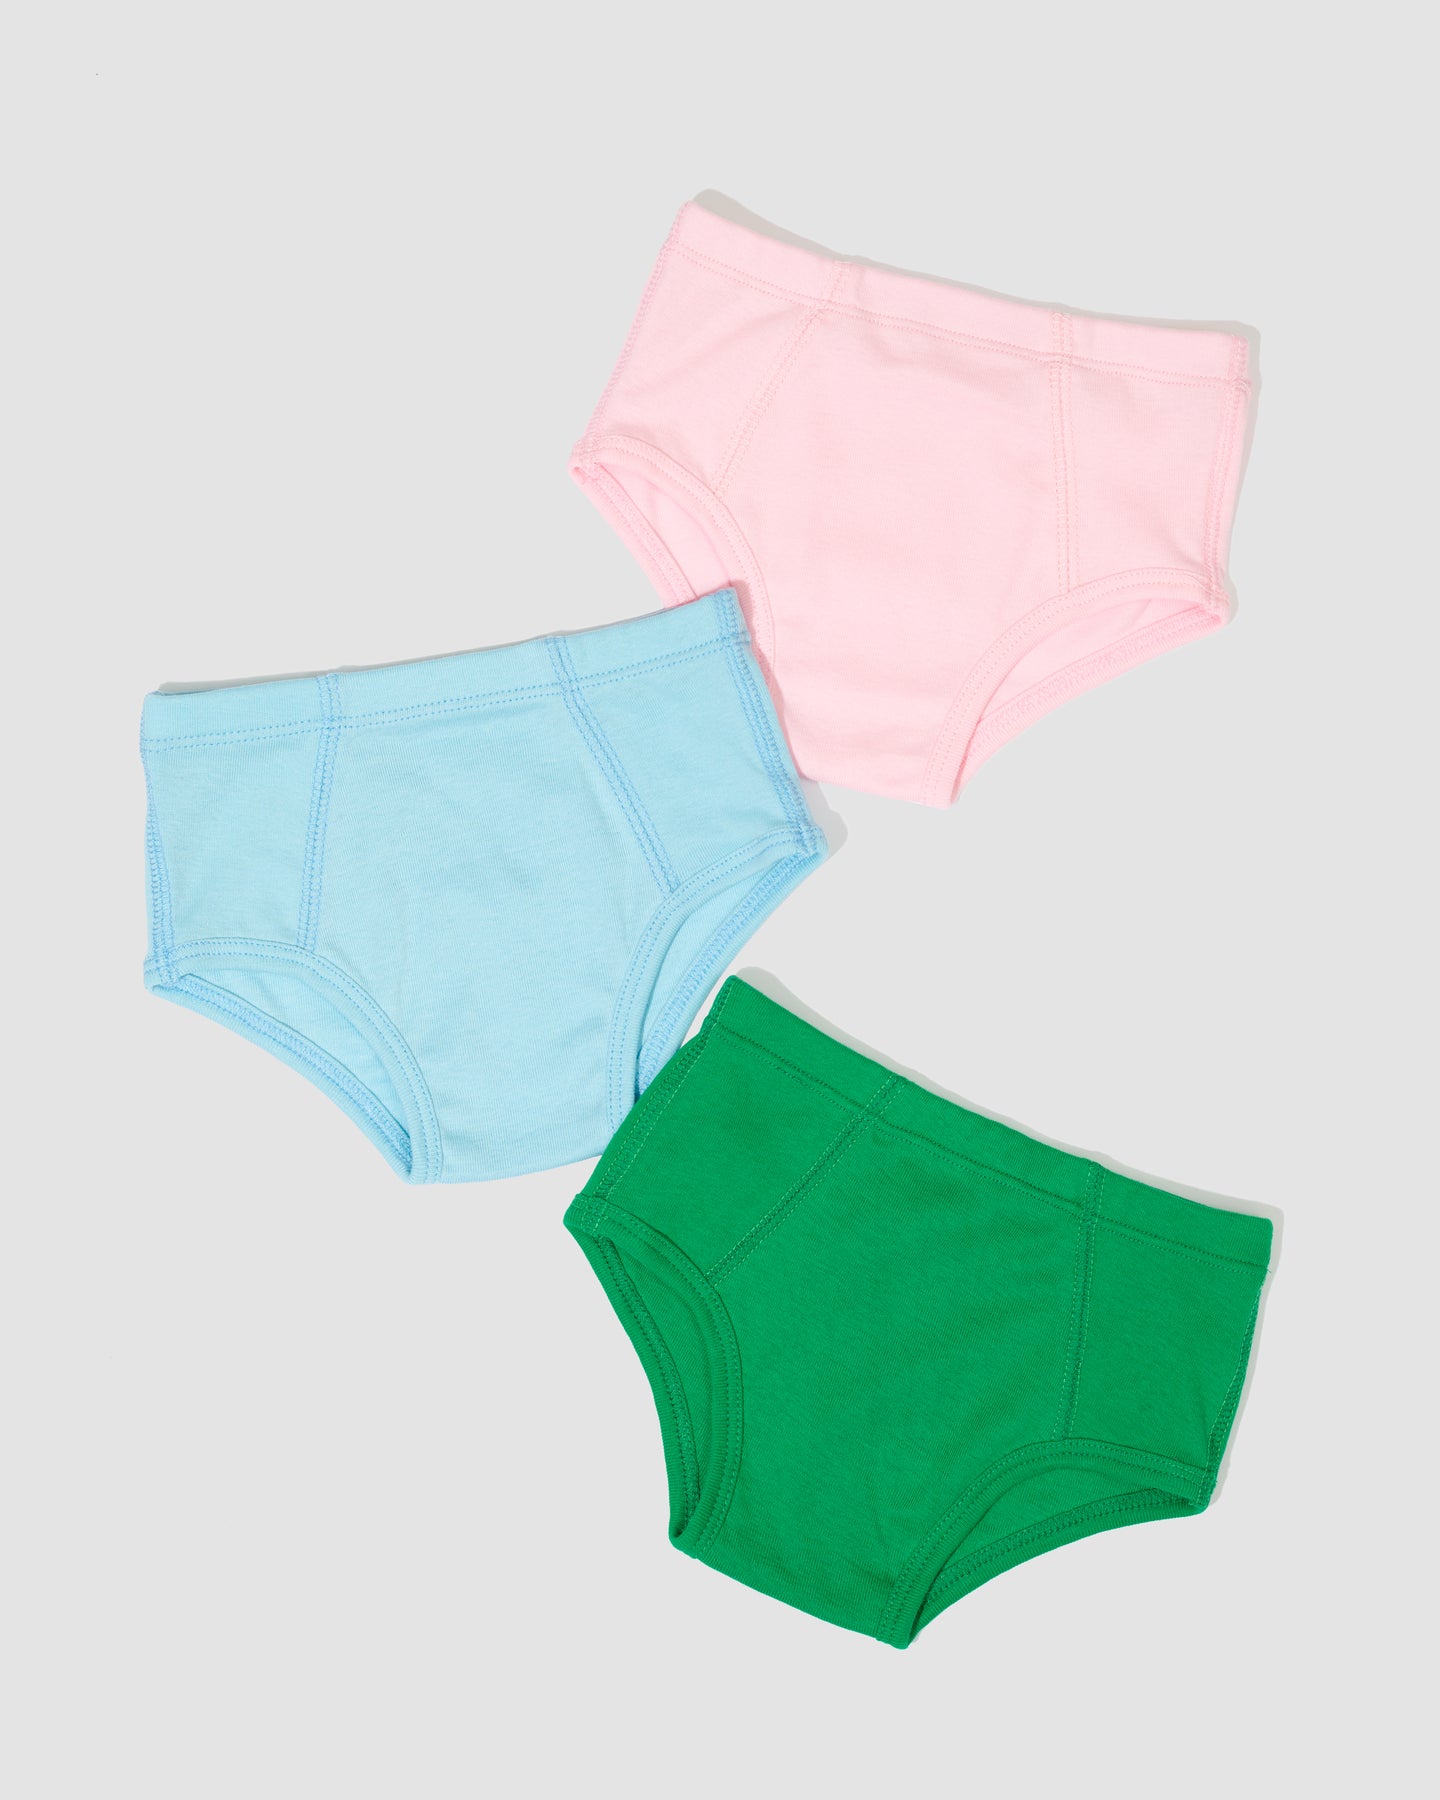 Children's Panties Girls, Cotton Briefs Underpants